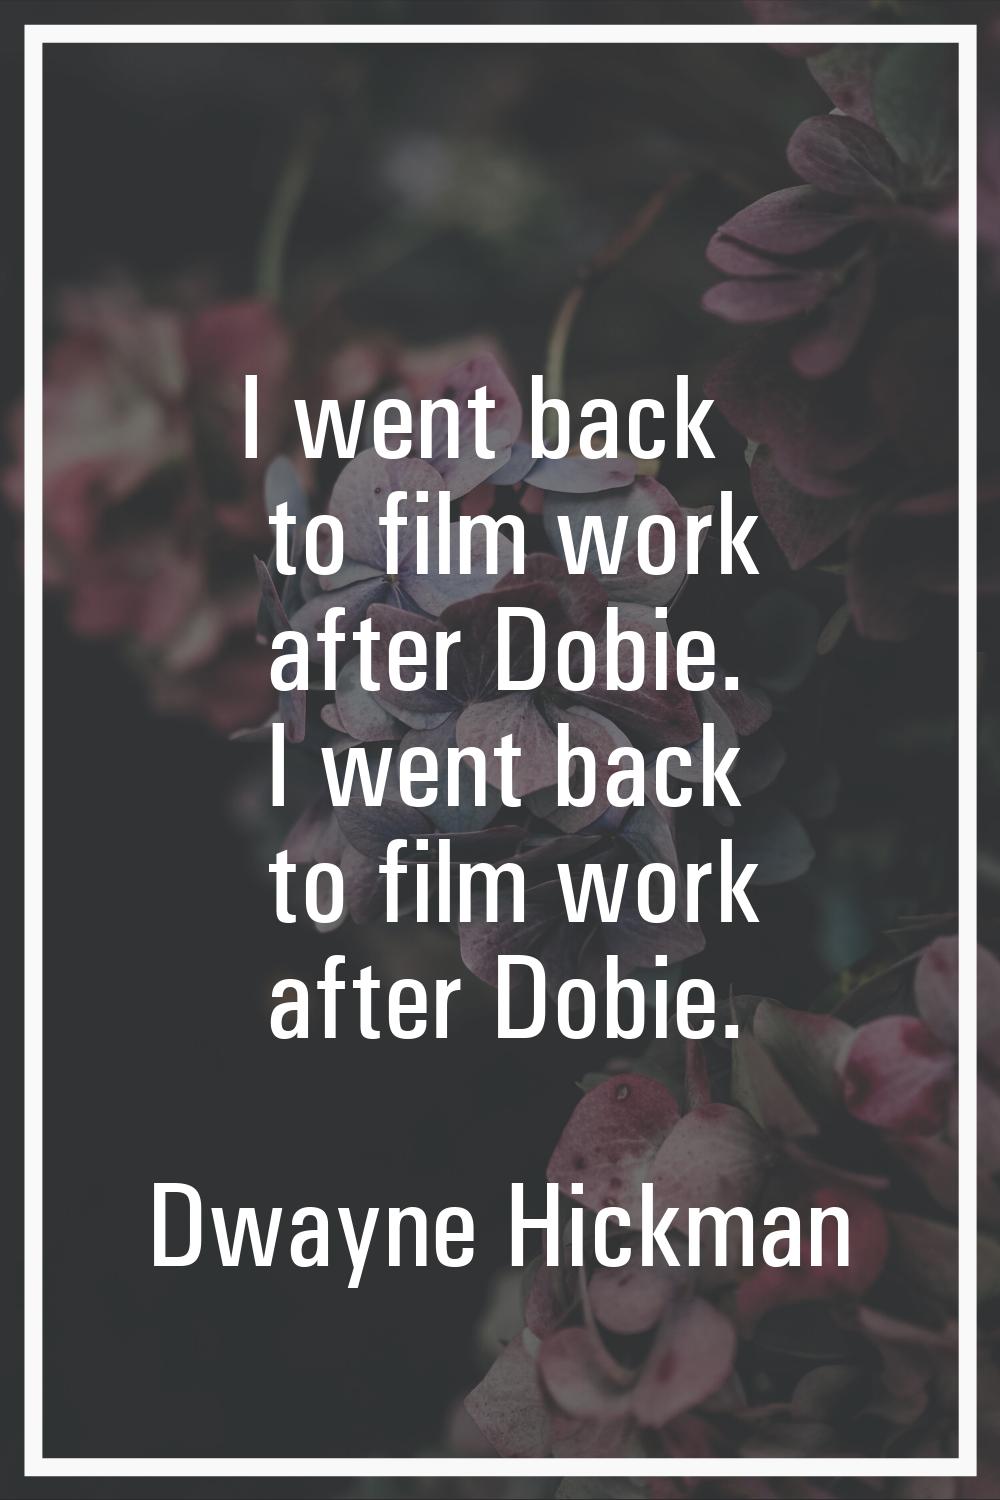 I went back to film work after Dobie. I went back to film work after Dobie.